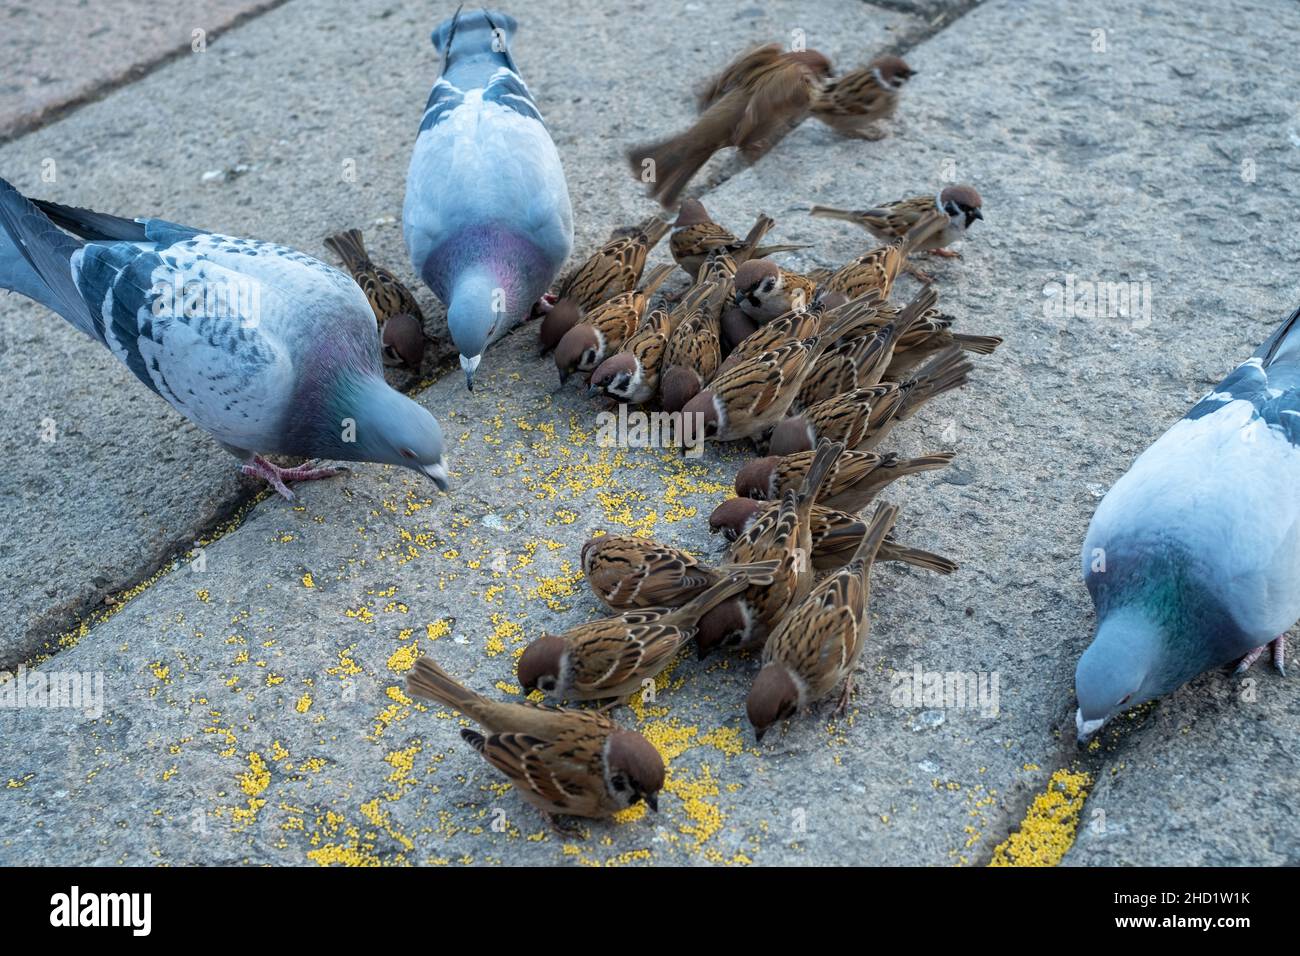 Un gruppo di passeri e piccioni mangia insieme in un luogo turistico a Pechino, in Cina. Foto Stock